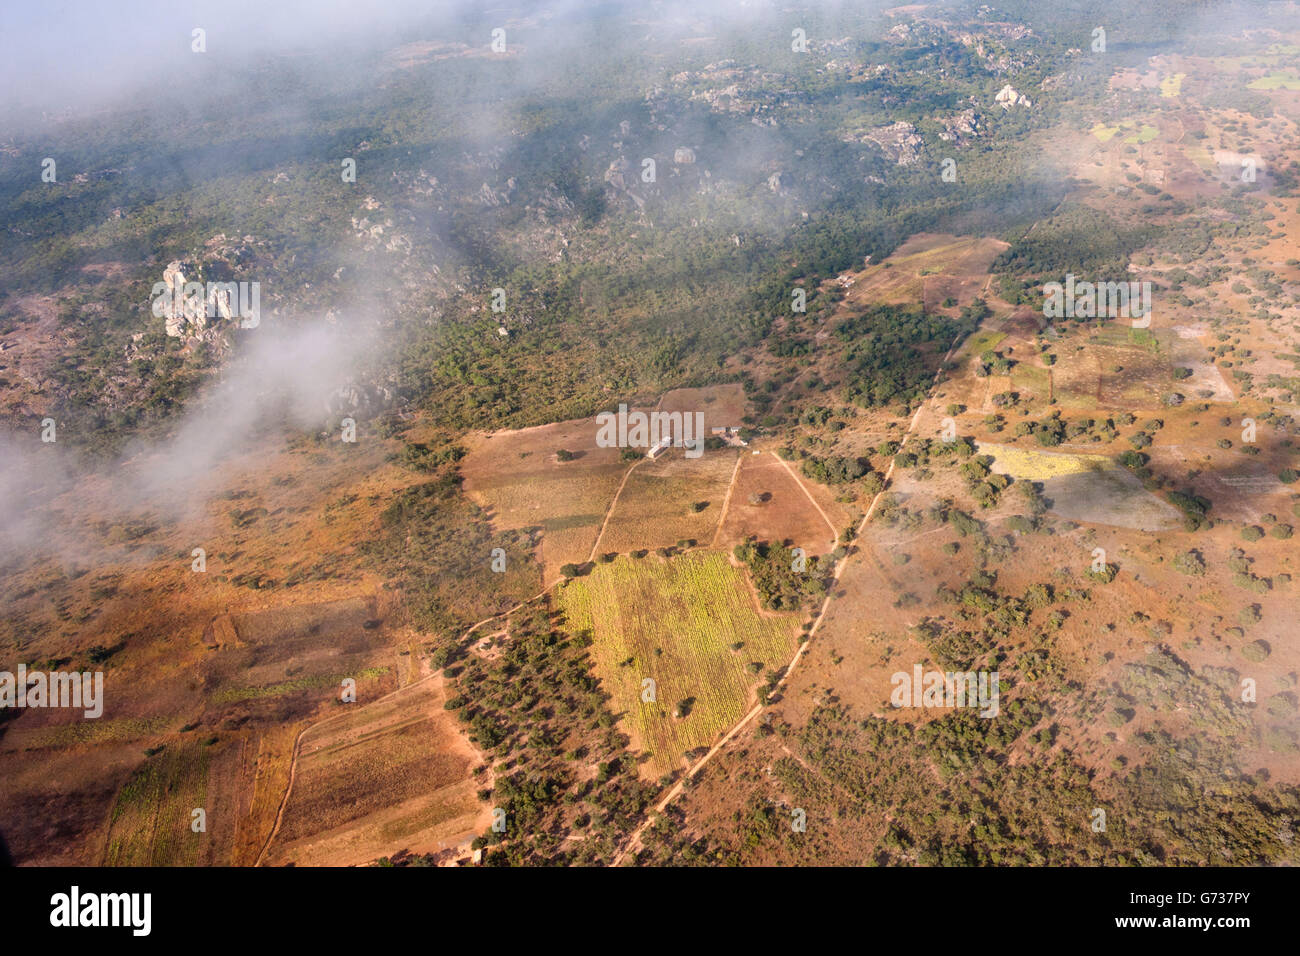 Una veduta aerea dell'agricoltura su piccola scala negli altopiani orientali dello Zimbabwe. Foto Stock